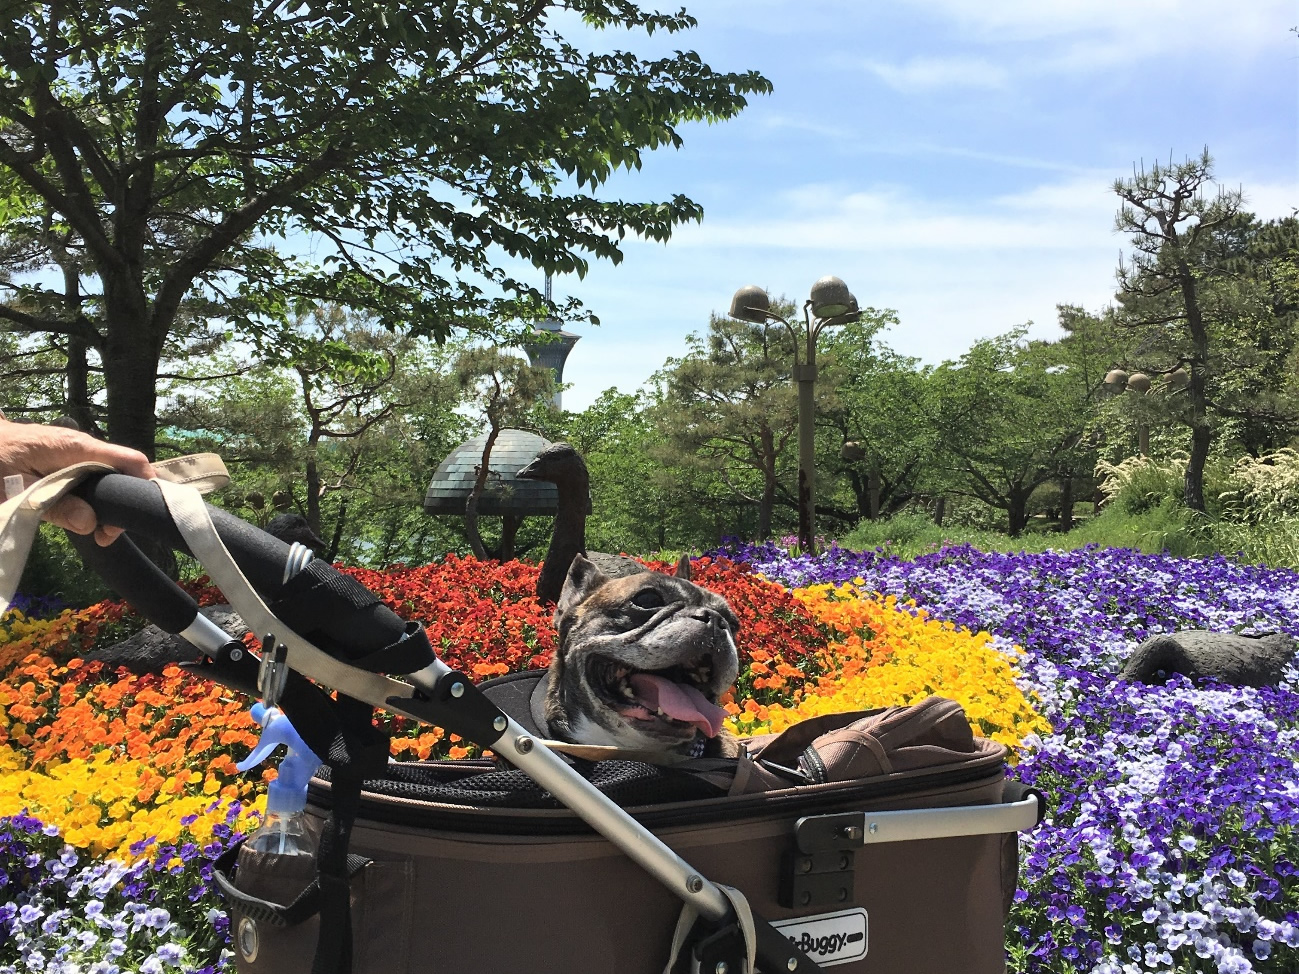 大阪市内で最大の公園 愛犬と一緒に 花博記念公園鶴見緑地 へお出かけ 愛犬との旅行ならイヌトミィ